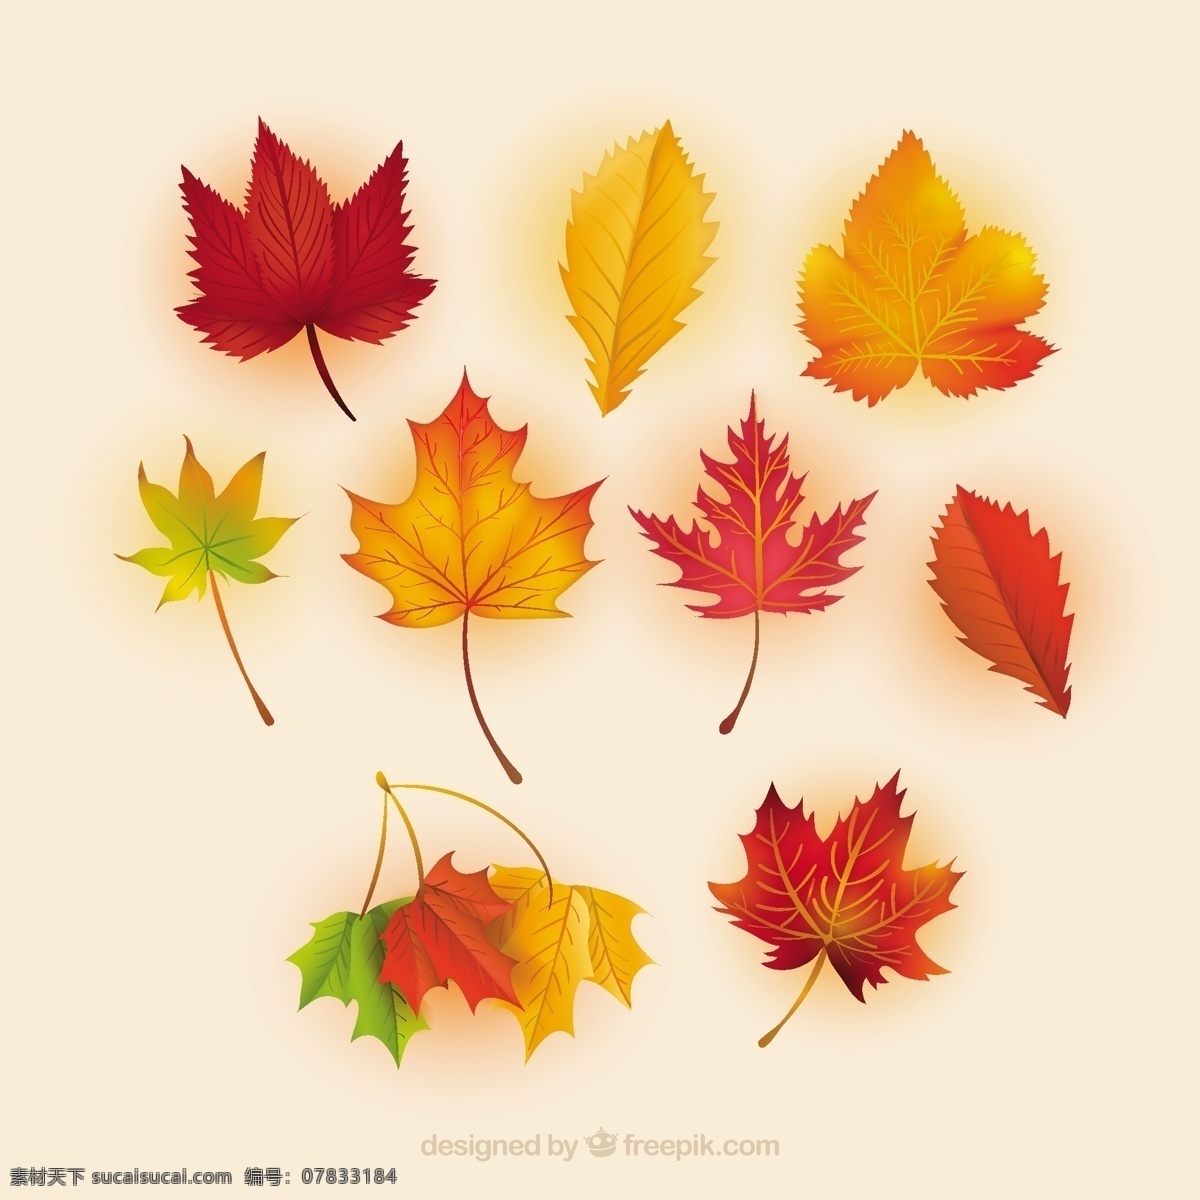 秋天红叶背景 背景 自然 性质 秋天 树叶 矢量 eps文件